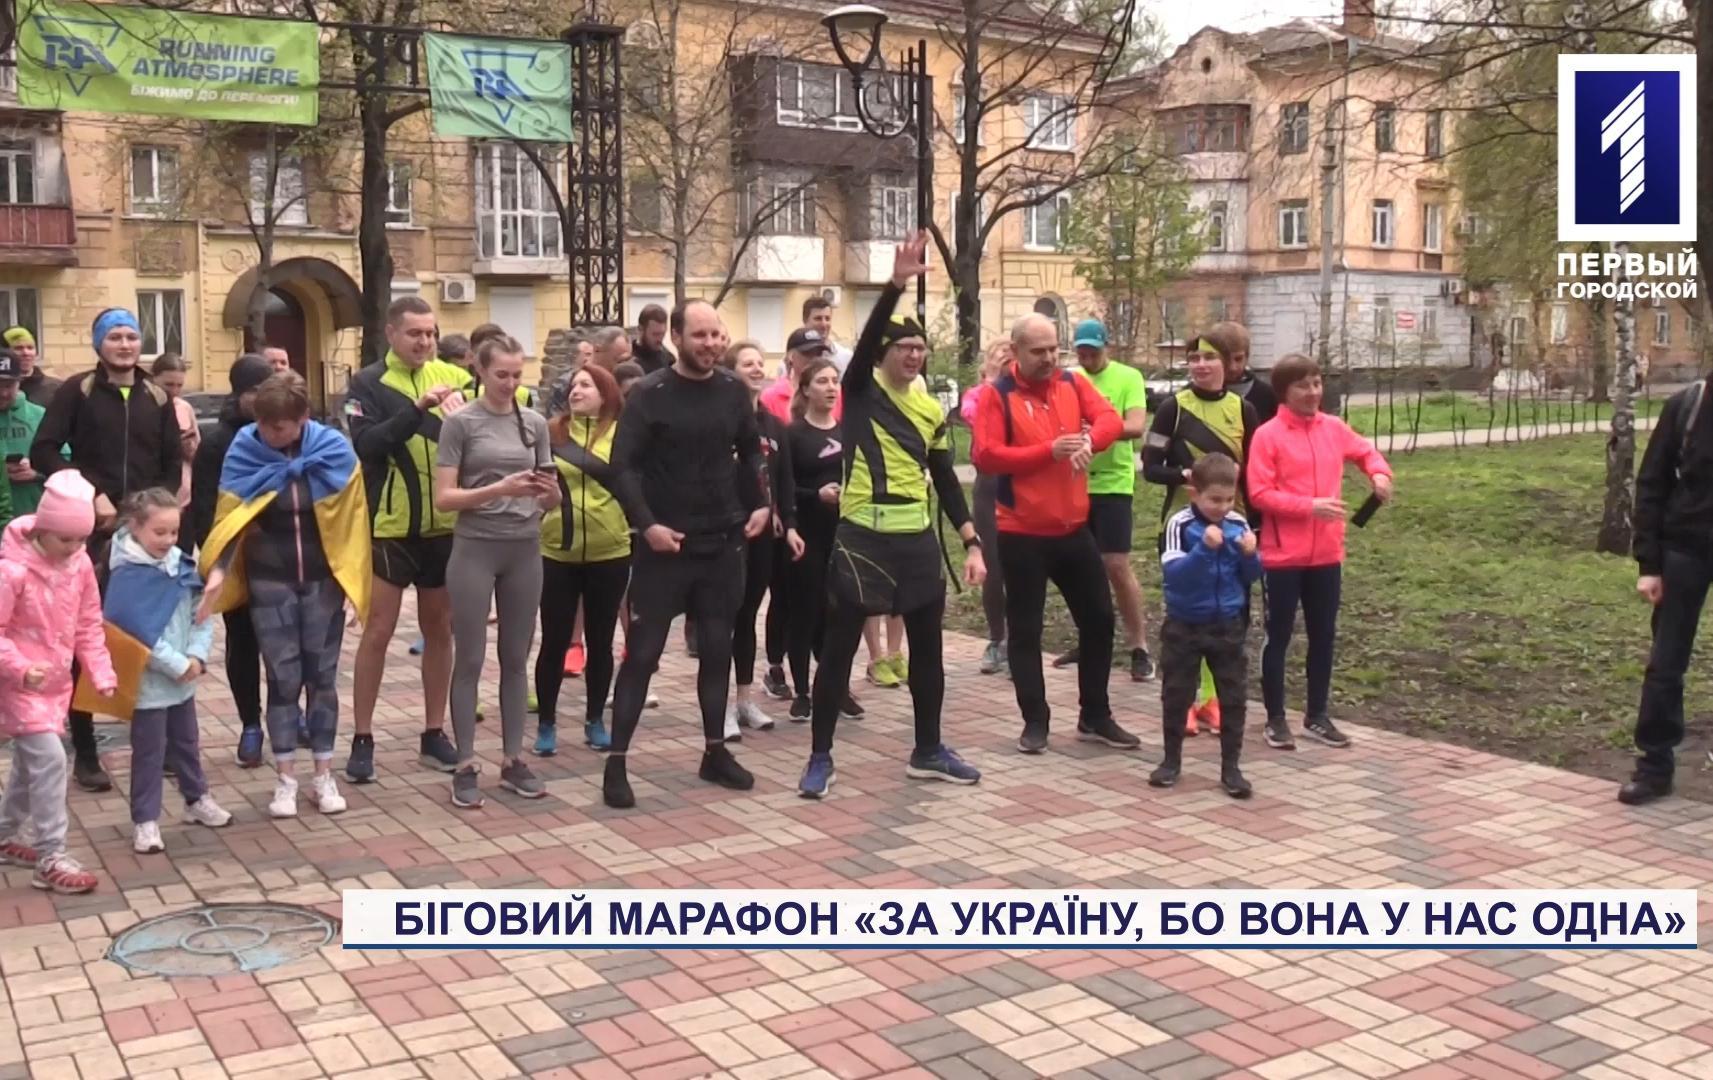 В Гданцевском парке Кривого Рога состоялся финальный забег благотворительного марафона